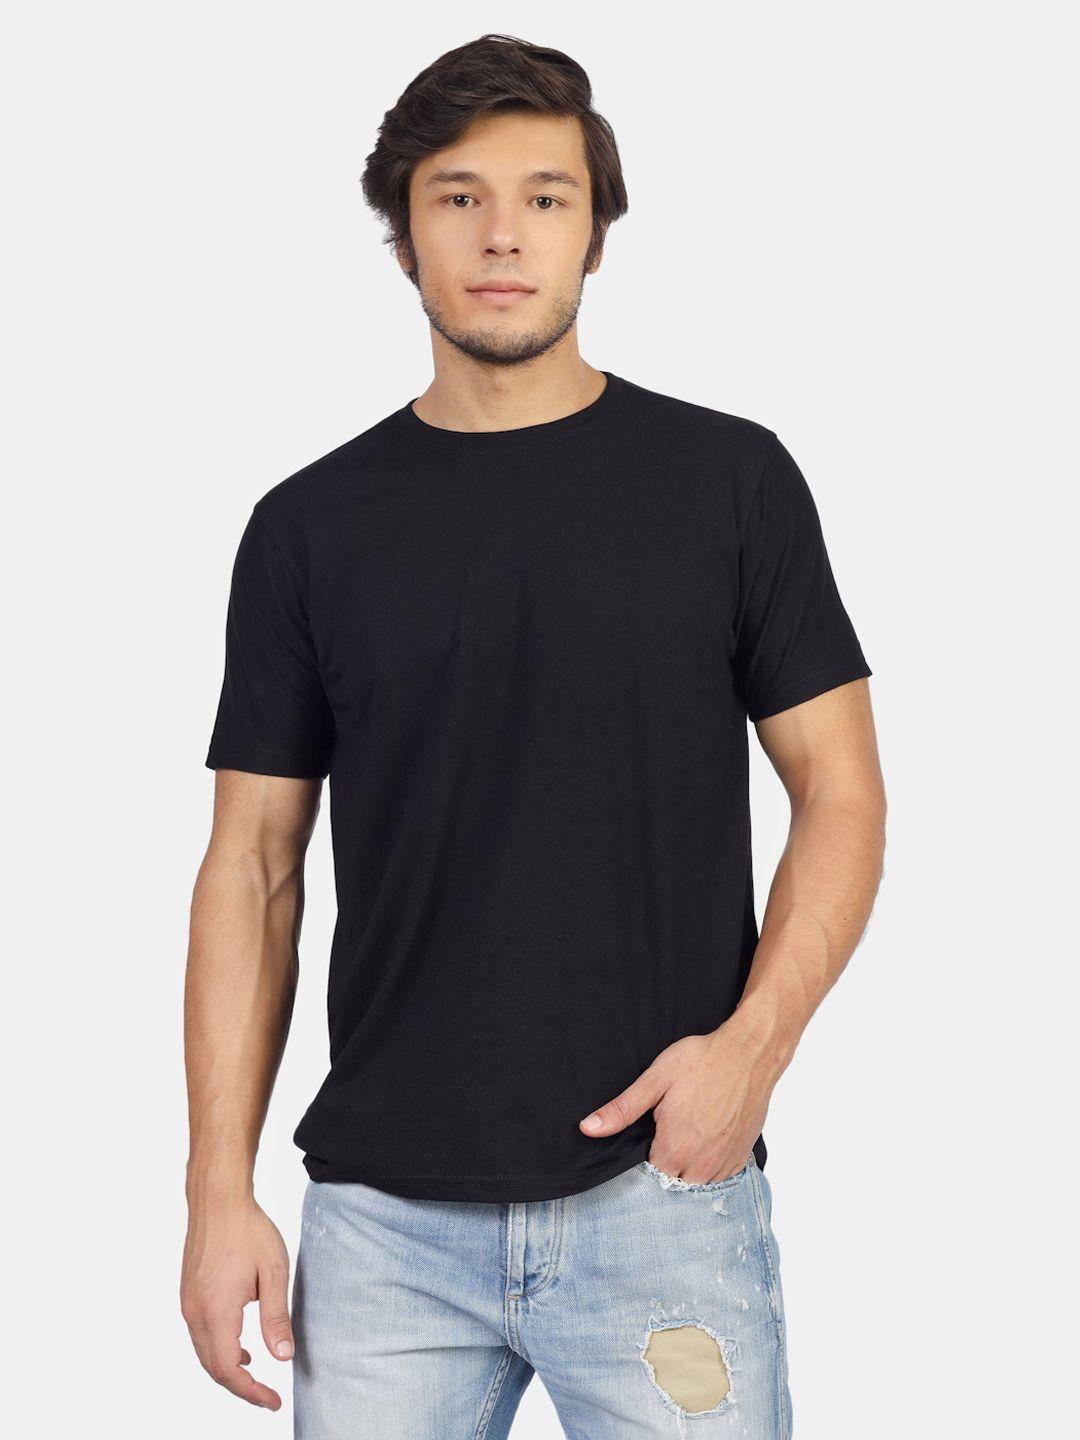 greylongg men v-neck raw edge t-shirt